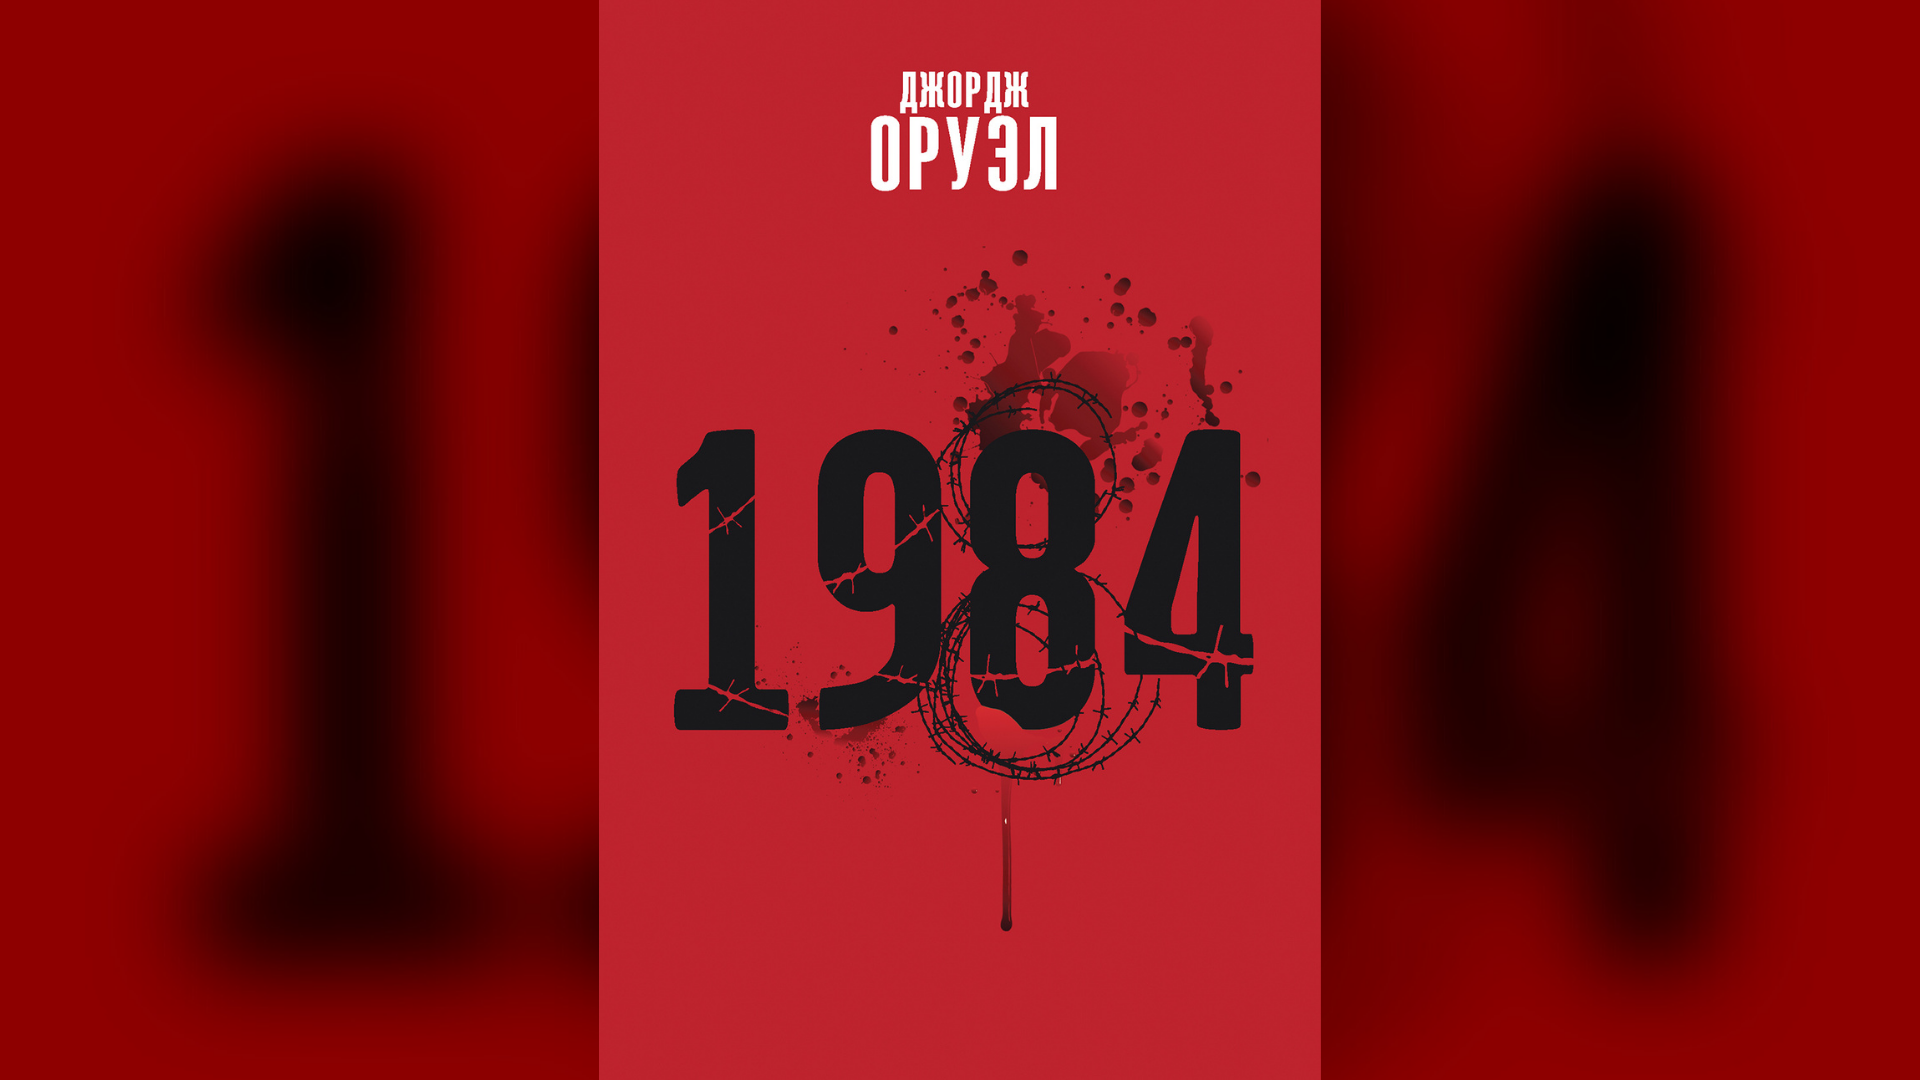 Edición bielorrusa de "1984" de George Orwell